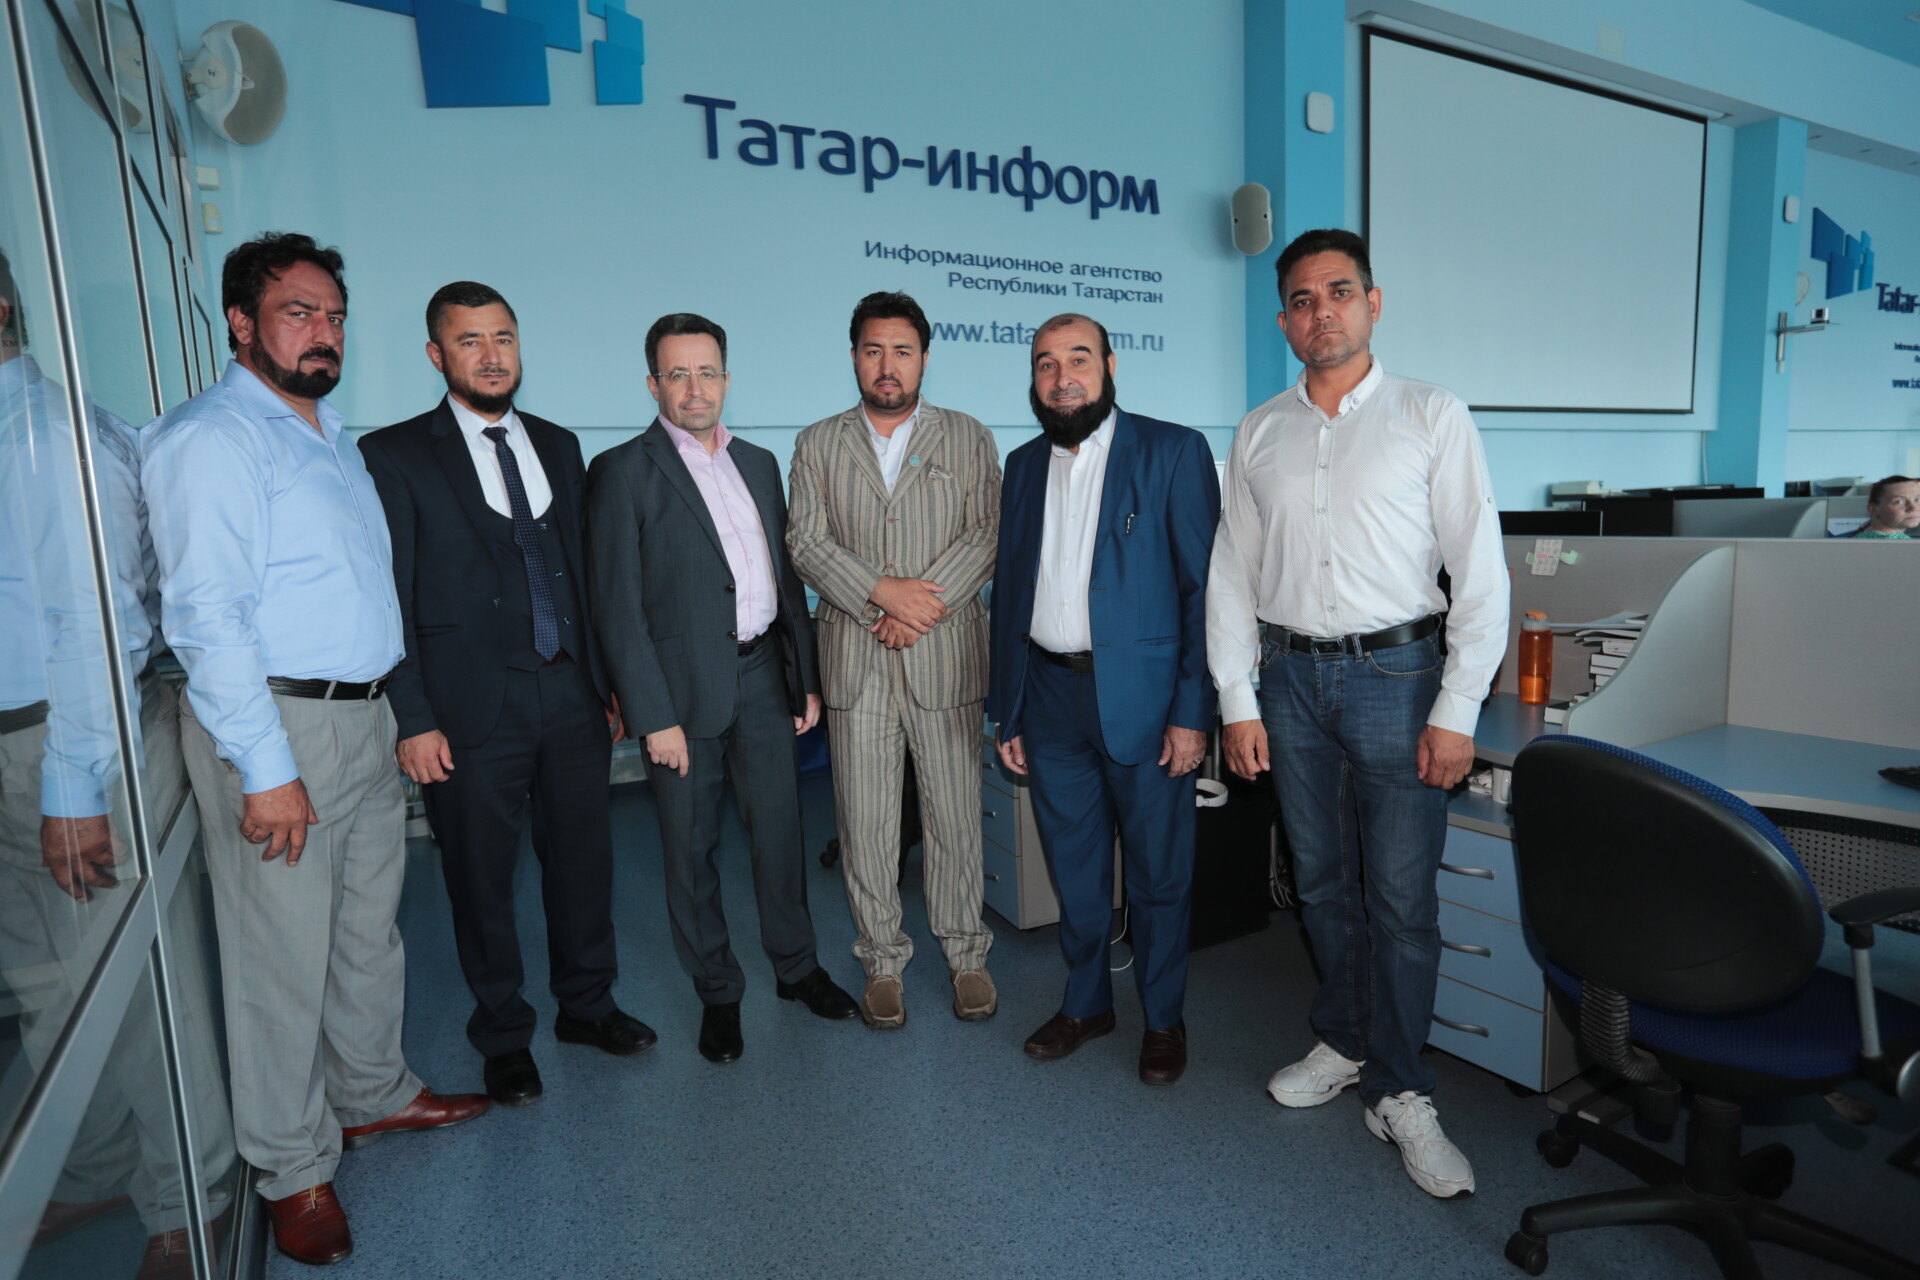 Әфганстан делегациясе «Татмедиа» һәм «Татар-информ»да булды